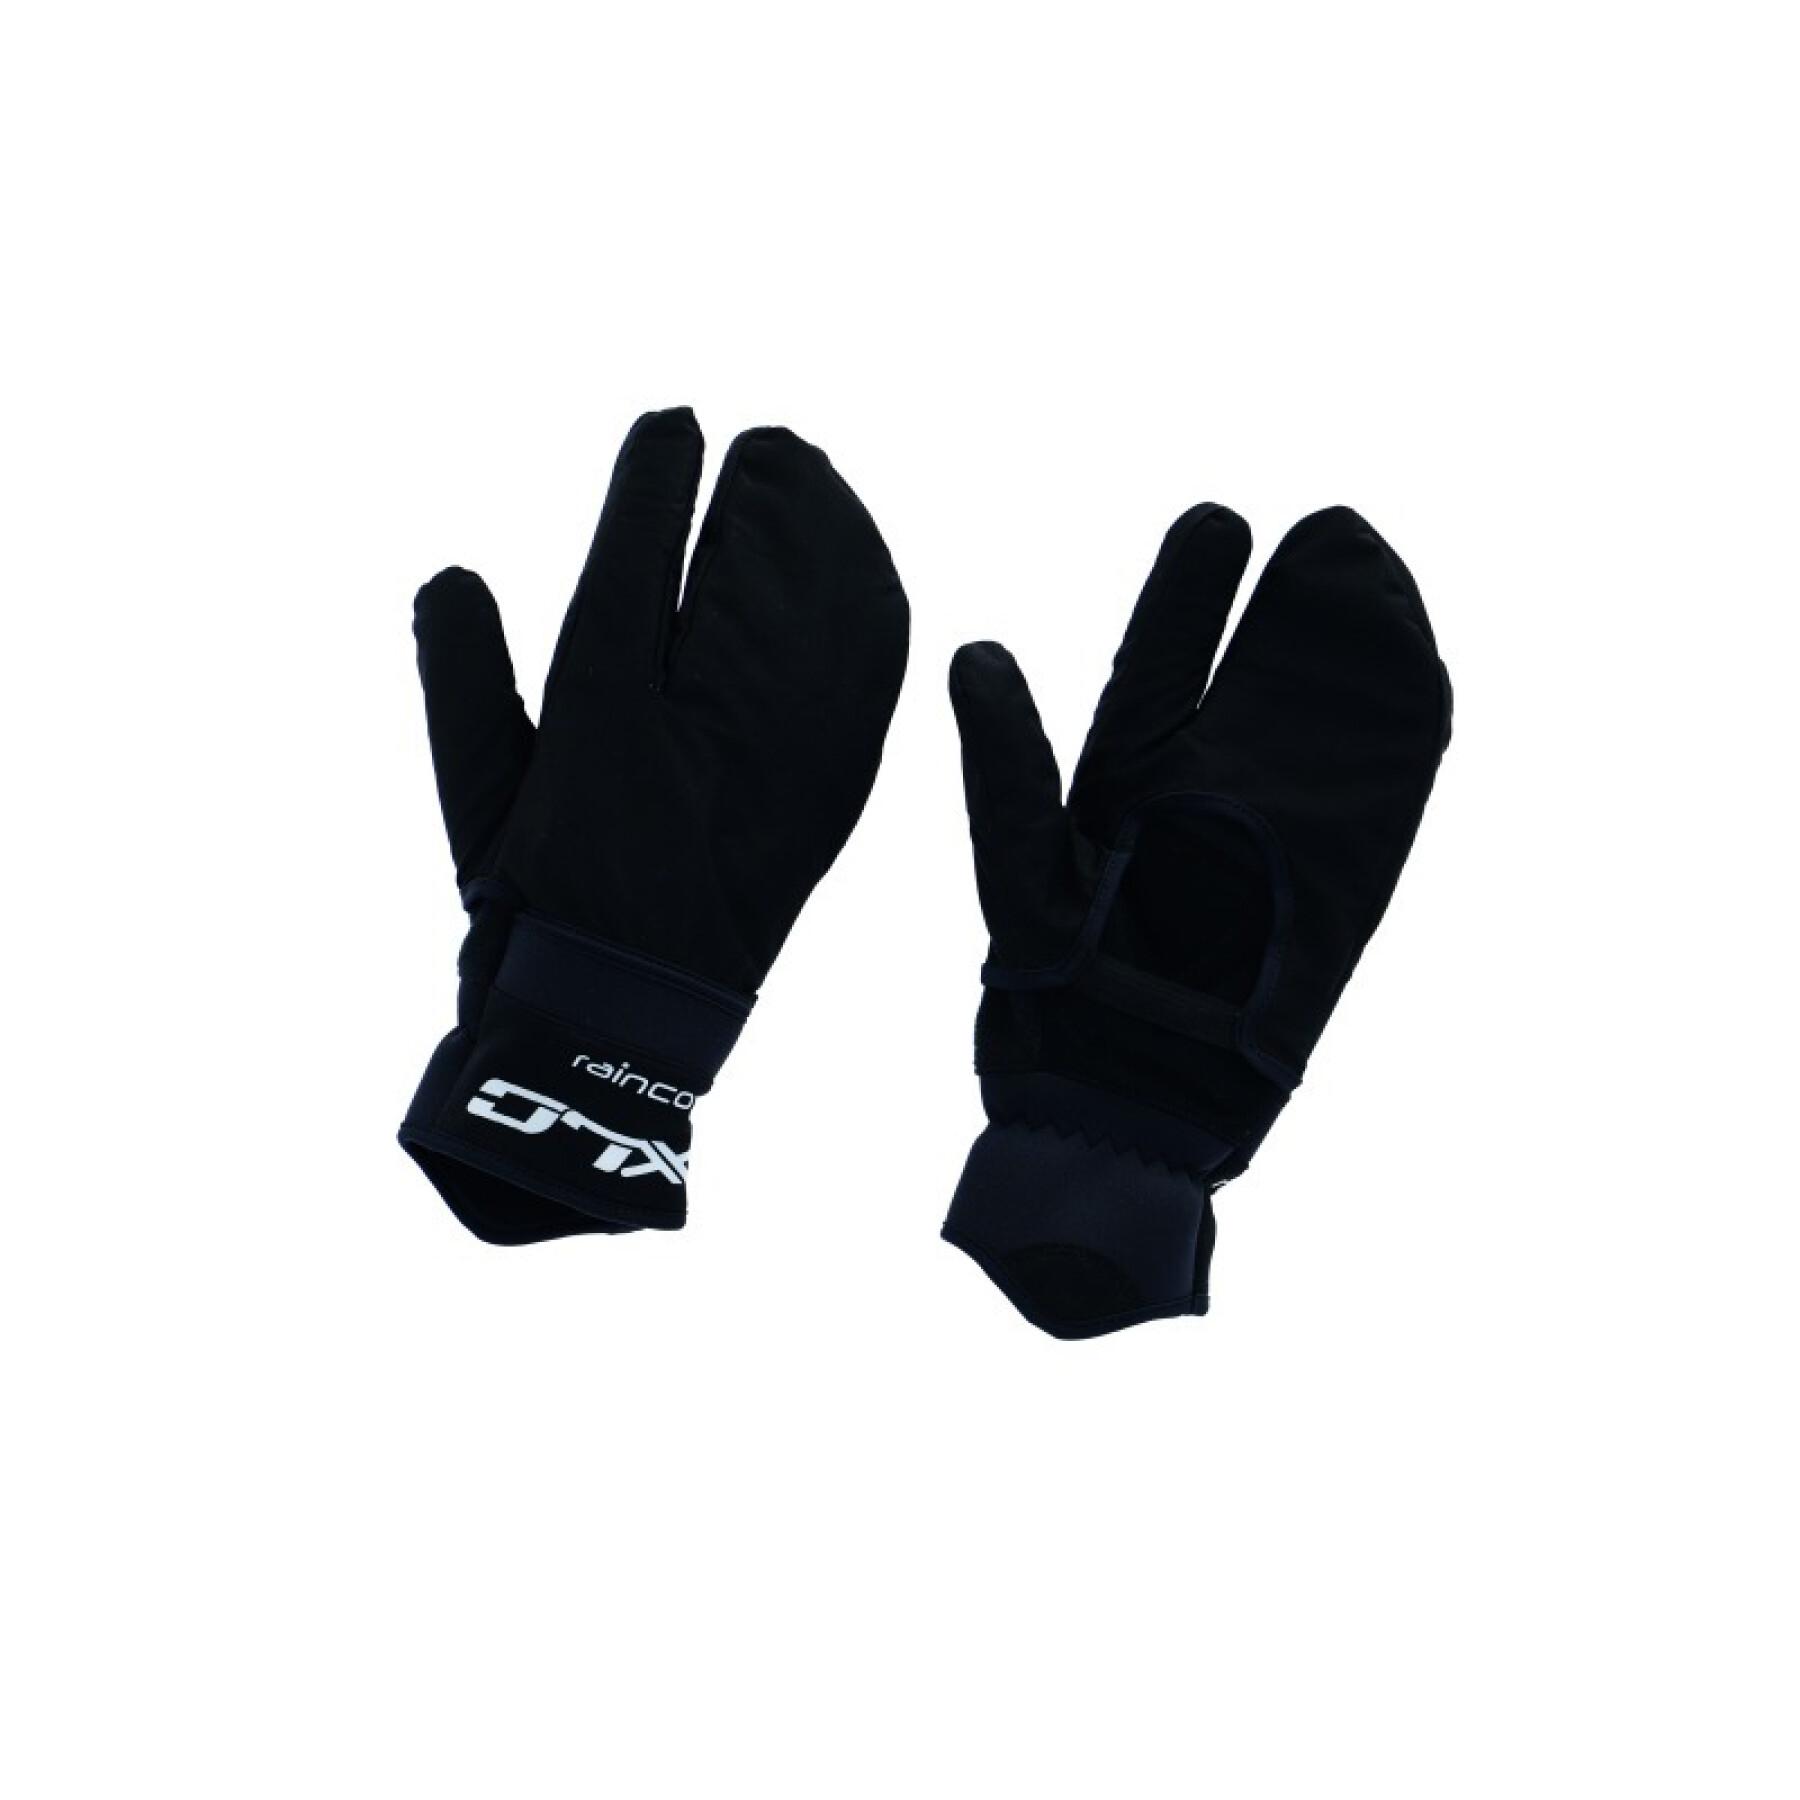 Lange winter fietshandschoenen met regenbescherming op duim en wijsvingers XLC CG-L17